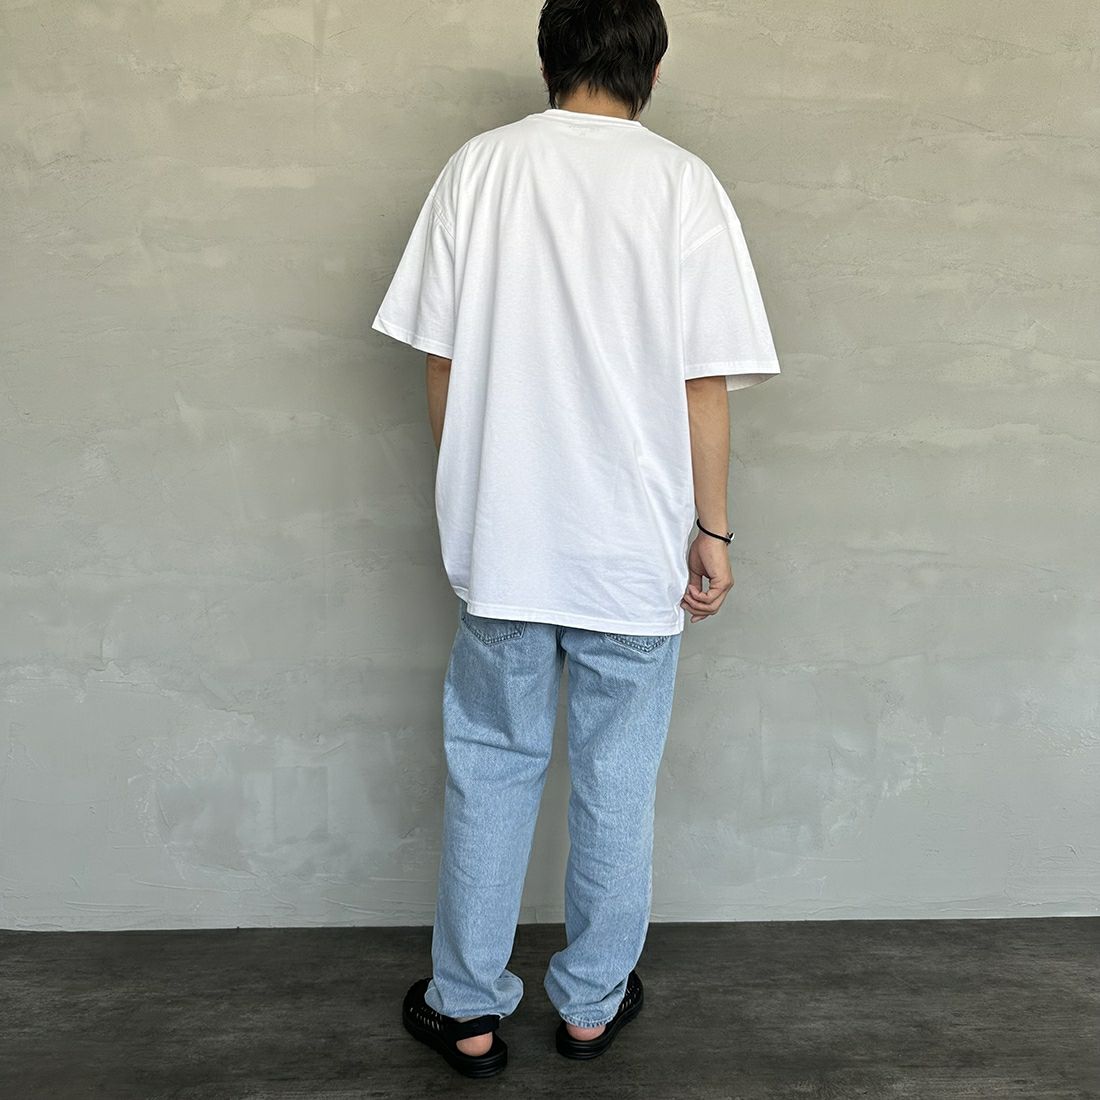 carhartt WIP [カーハートダブリューアイピー] ショートスリーブアメリカンスクリプトTシャツ [I029956] WHITE &&モデル身長：173cm 着用サイズ：L&&